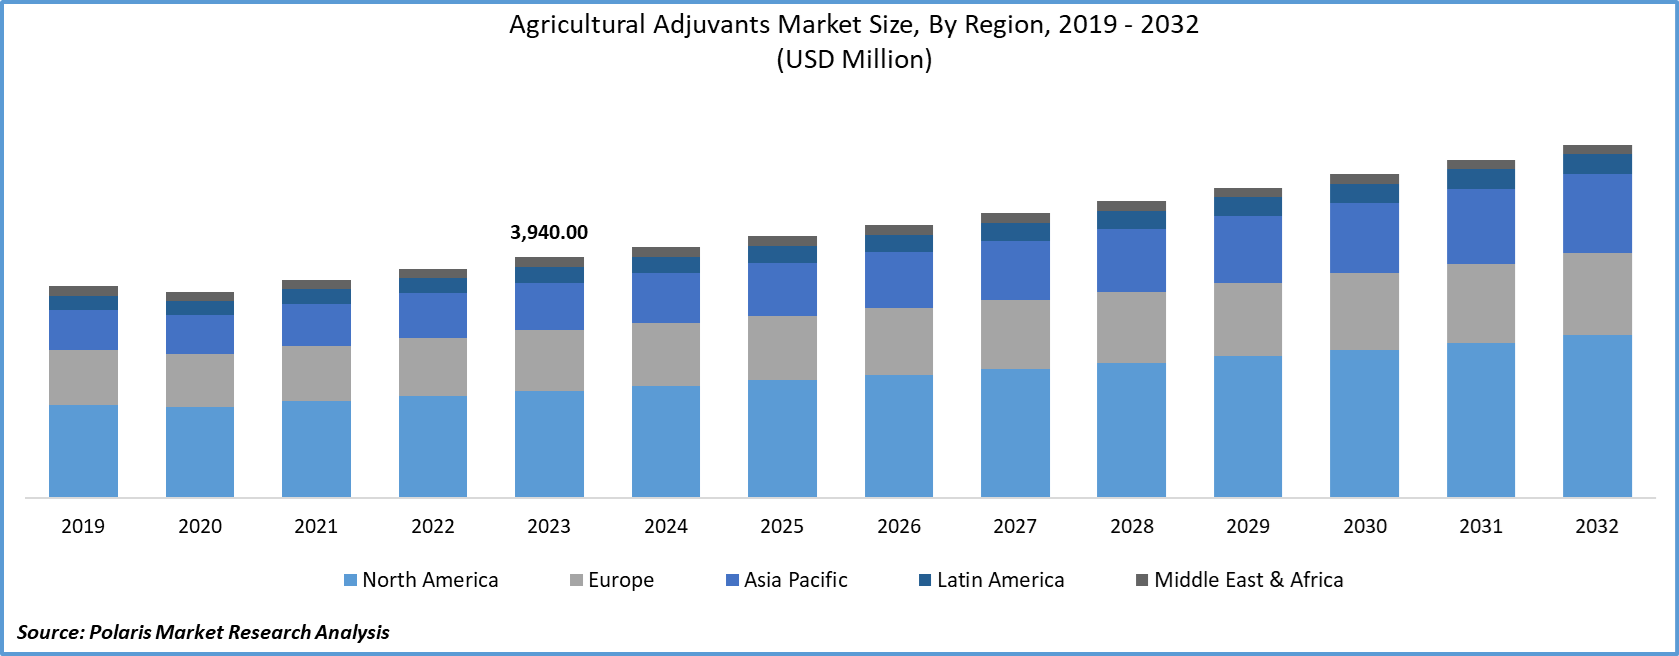 Agricultural Adjuvants Market Size